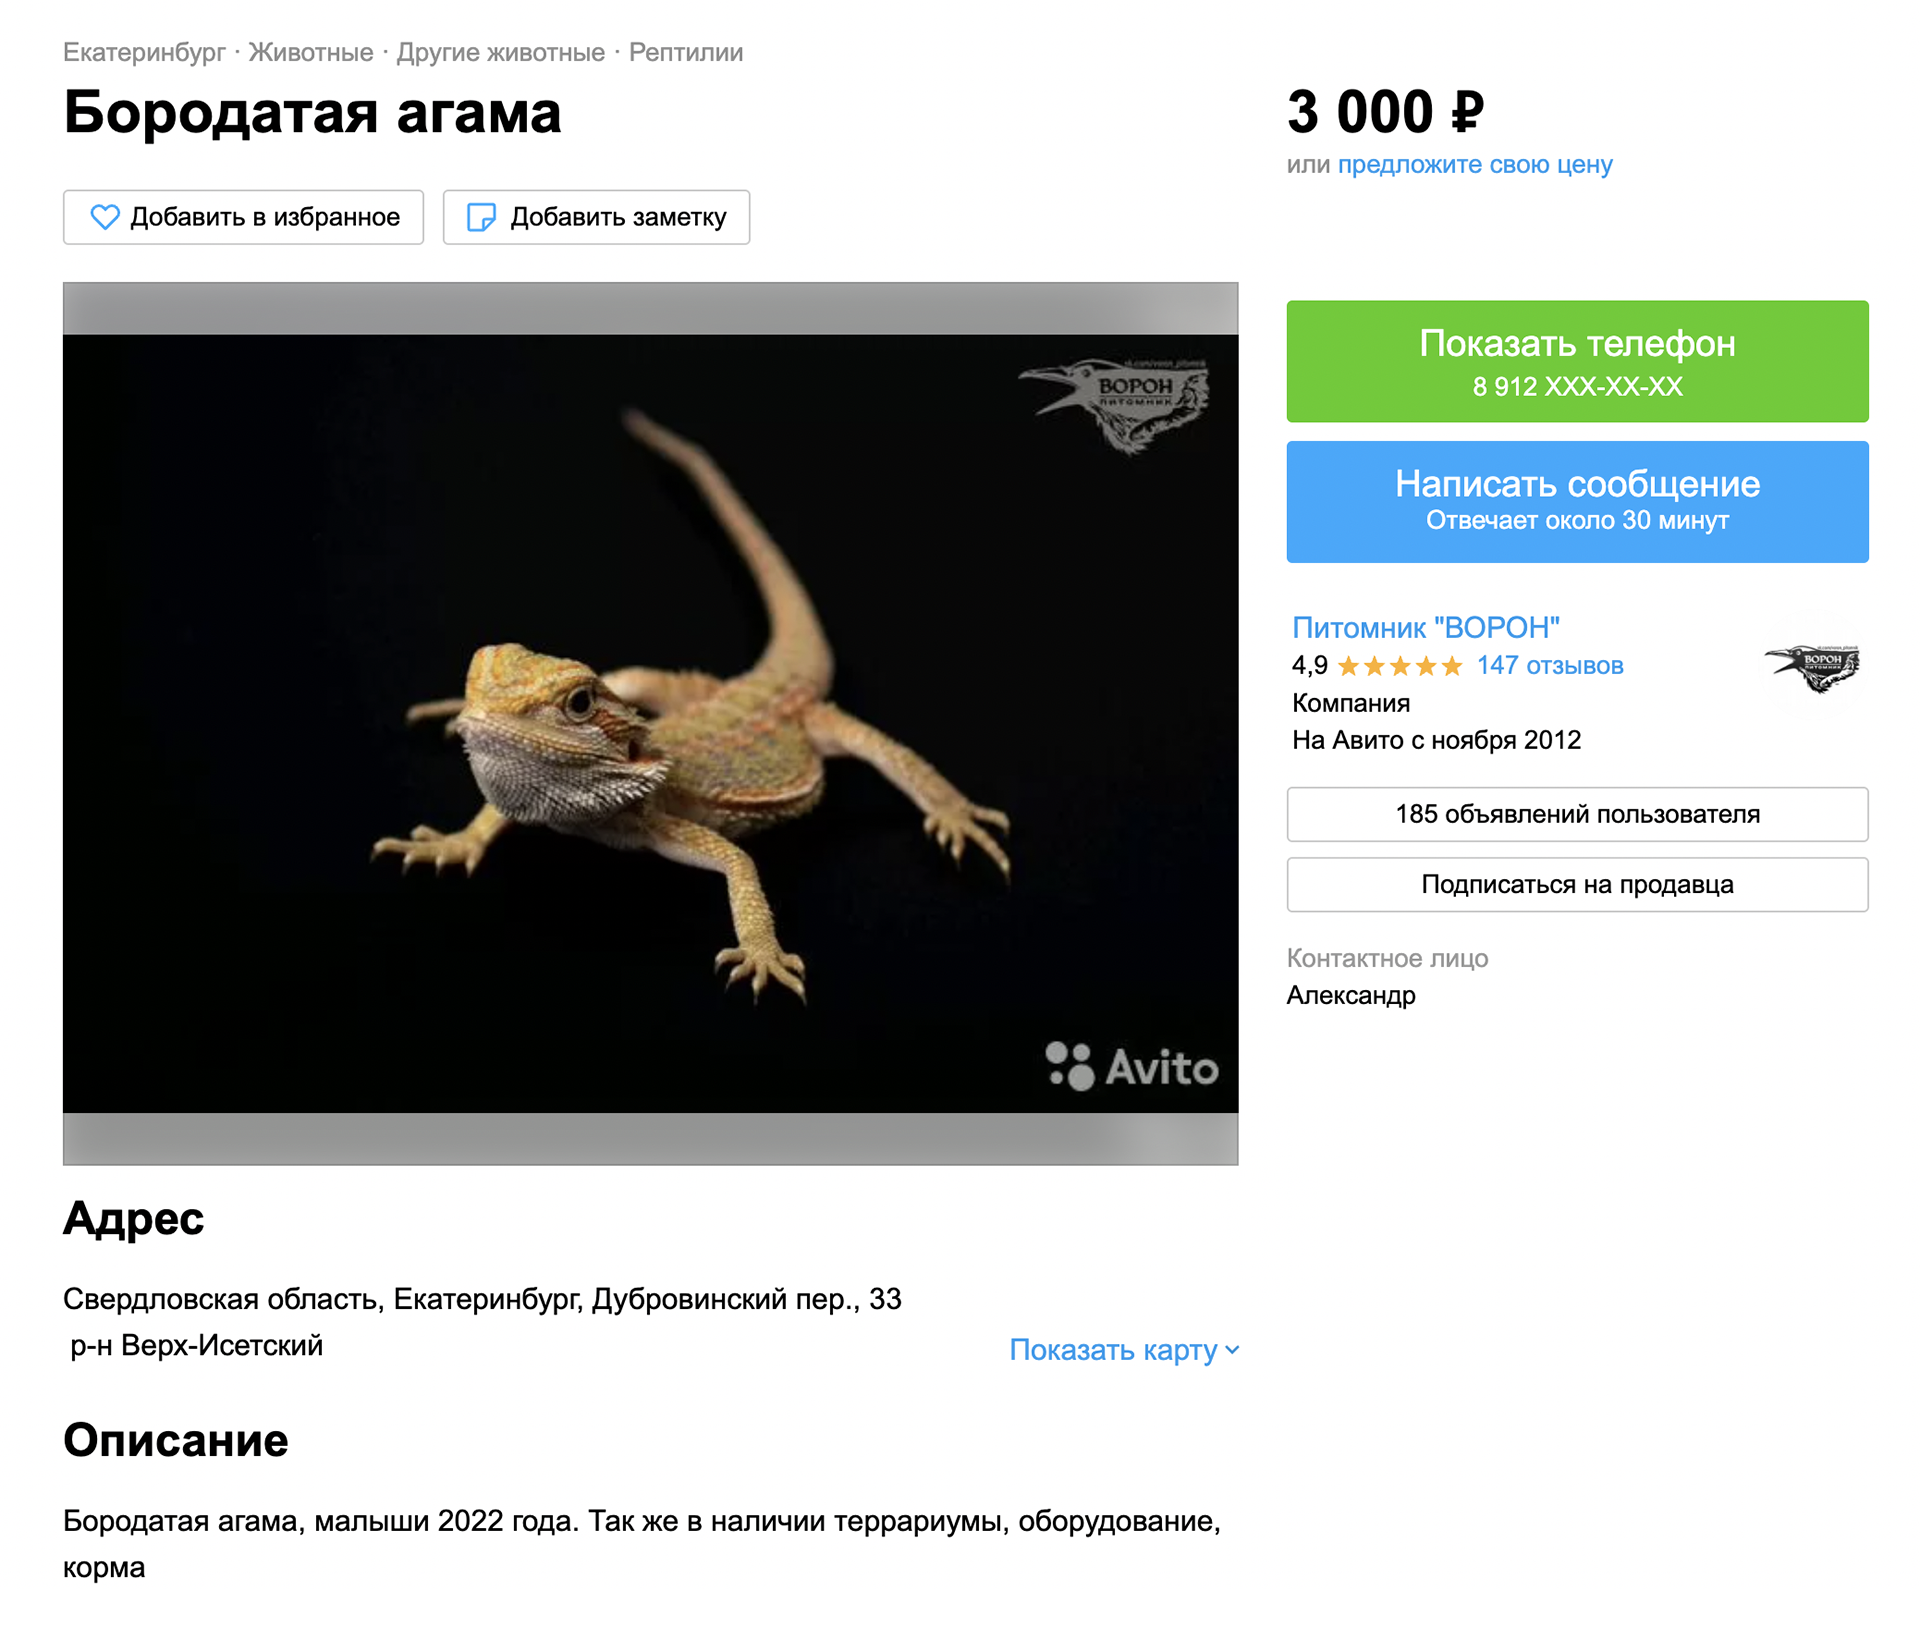 Этот питомник в Екатеринбурге предлагает агам за 3000 ₽, а также оборудование и корма. Источник: avito.ru